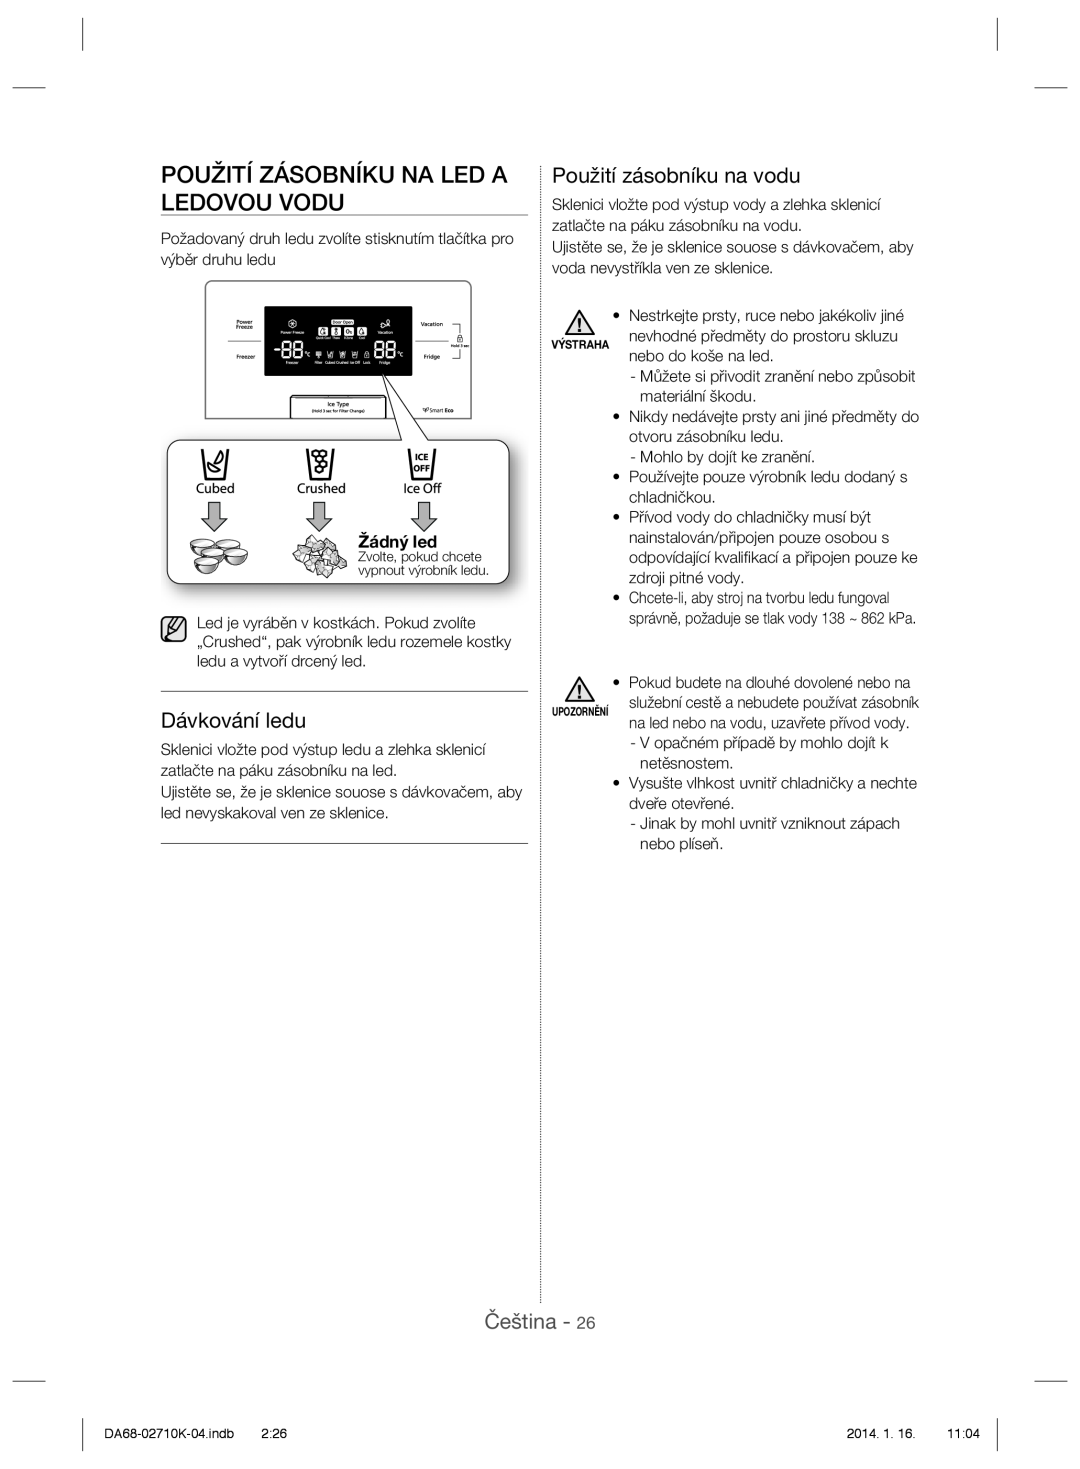 Samsung RS7568BHCSP/EF manual Použití Zásobníku Na Led A Ledovou Vodu, Dávkování ledu, Použití zásobníku na vodu, Čeština 